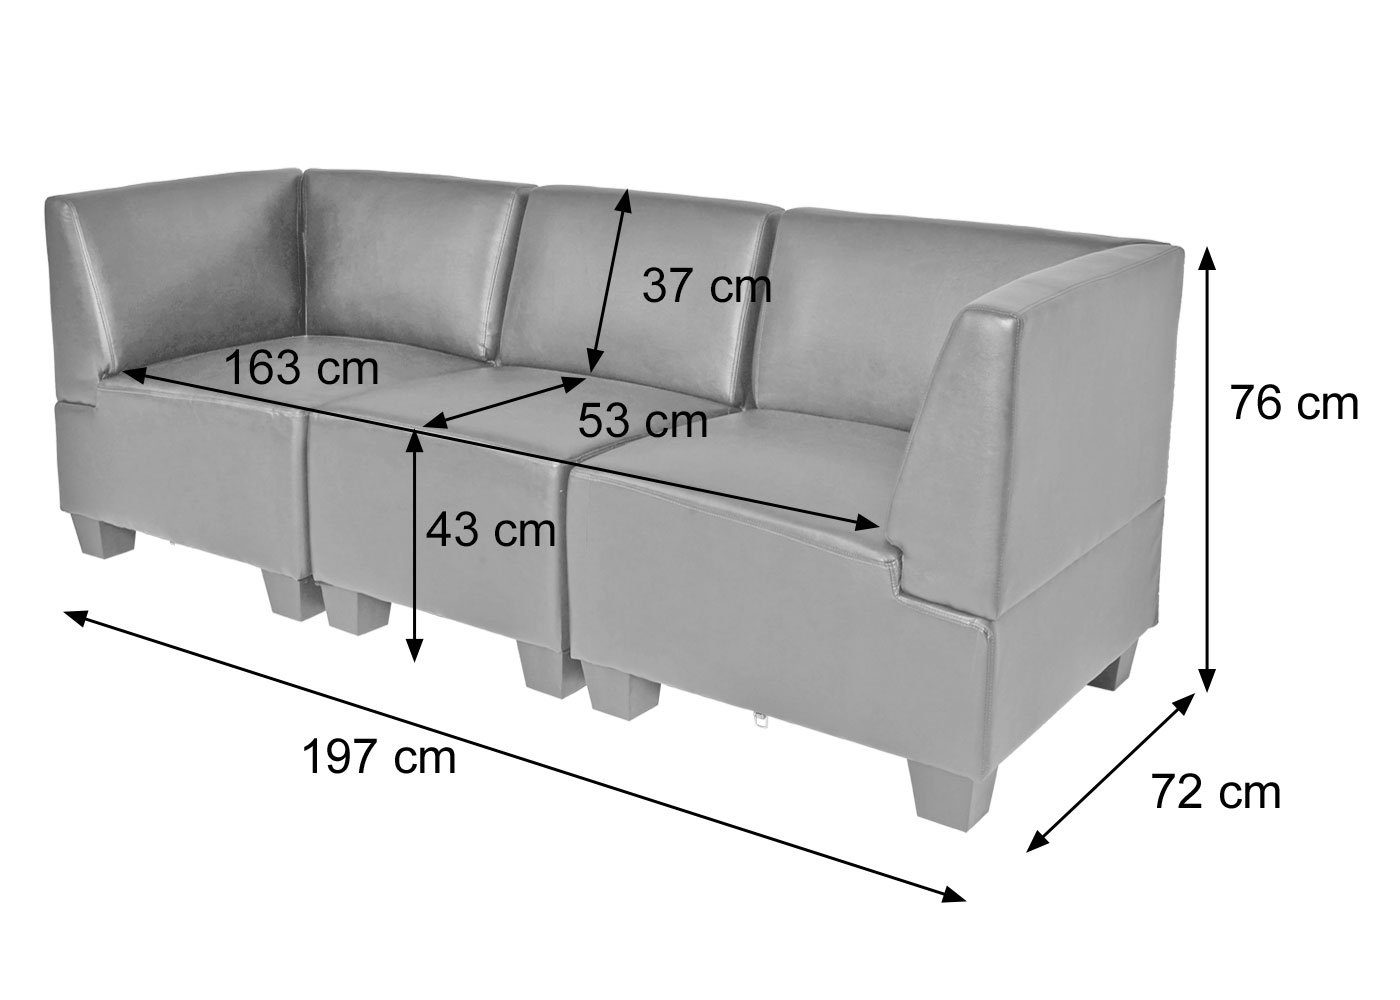 | 3-Sitzer hochwertige rot-braun bequeme rot-braun Polsterung Lounge-Stil, Verarbeitung, Moncalieri-3S, MCW moderner